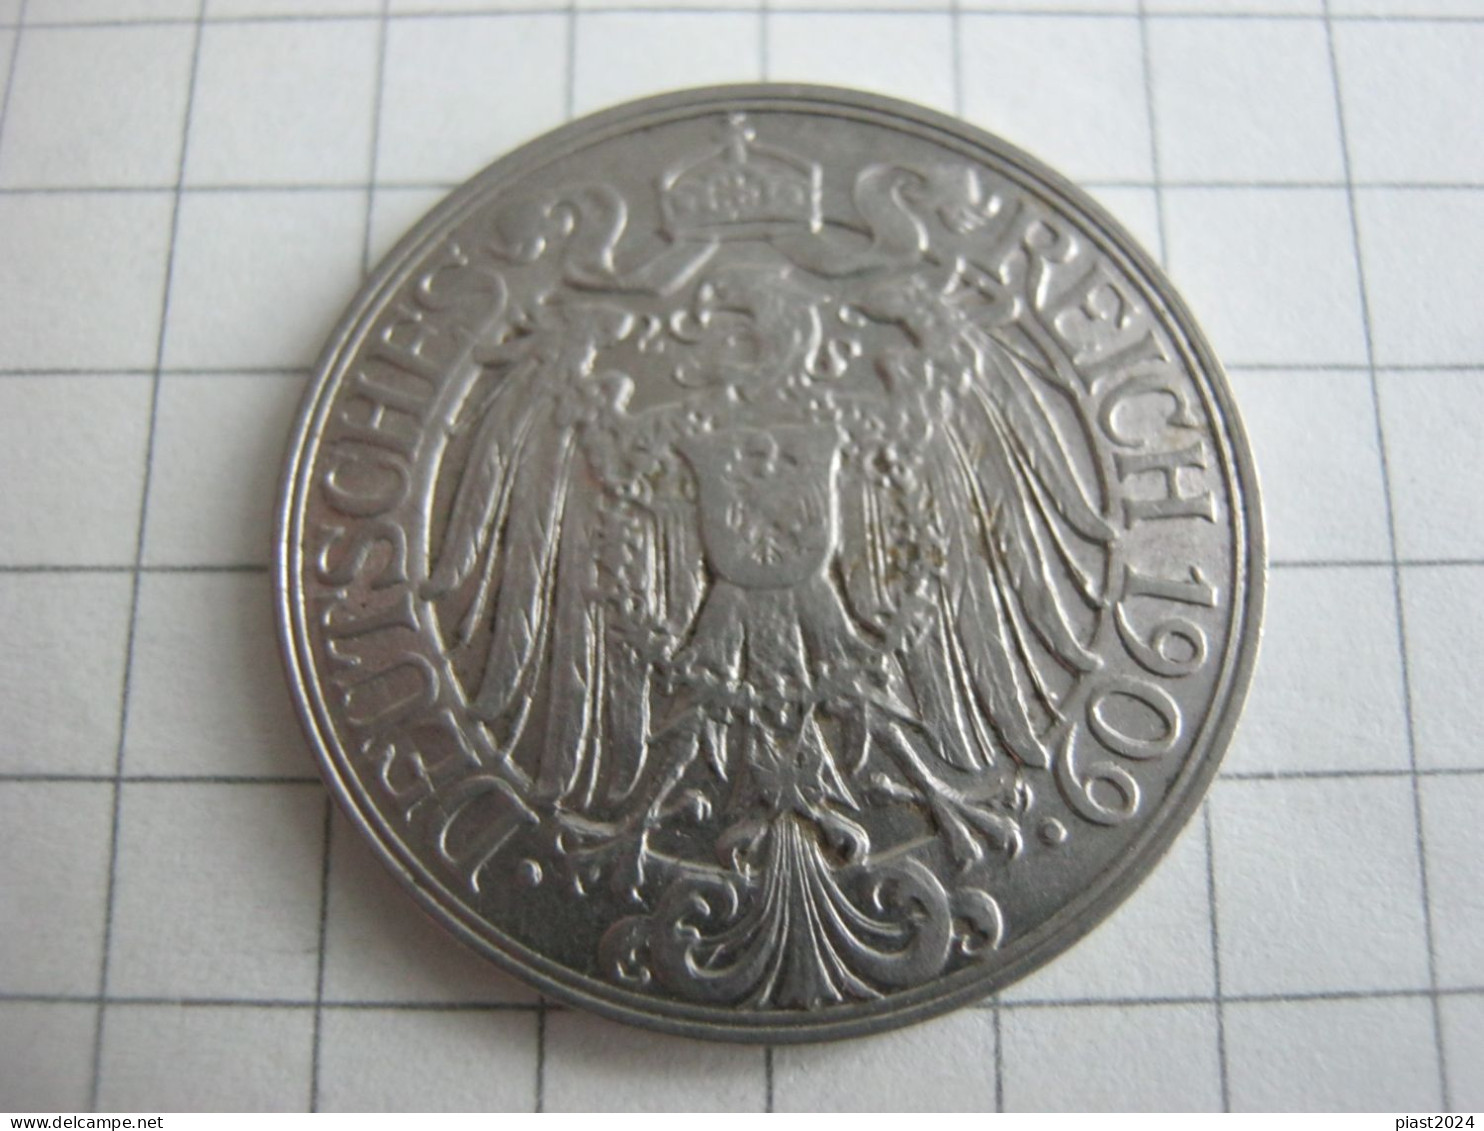 Germany 25 Pfennig 1909 D - 25 Pfennig